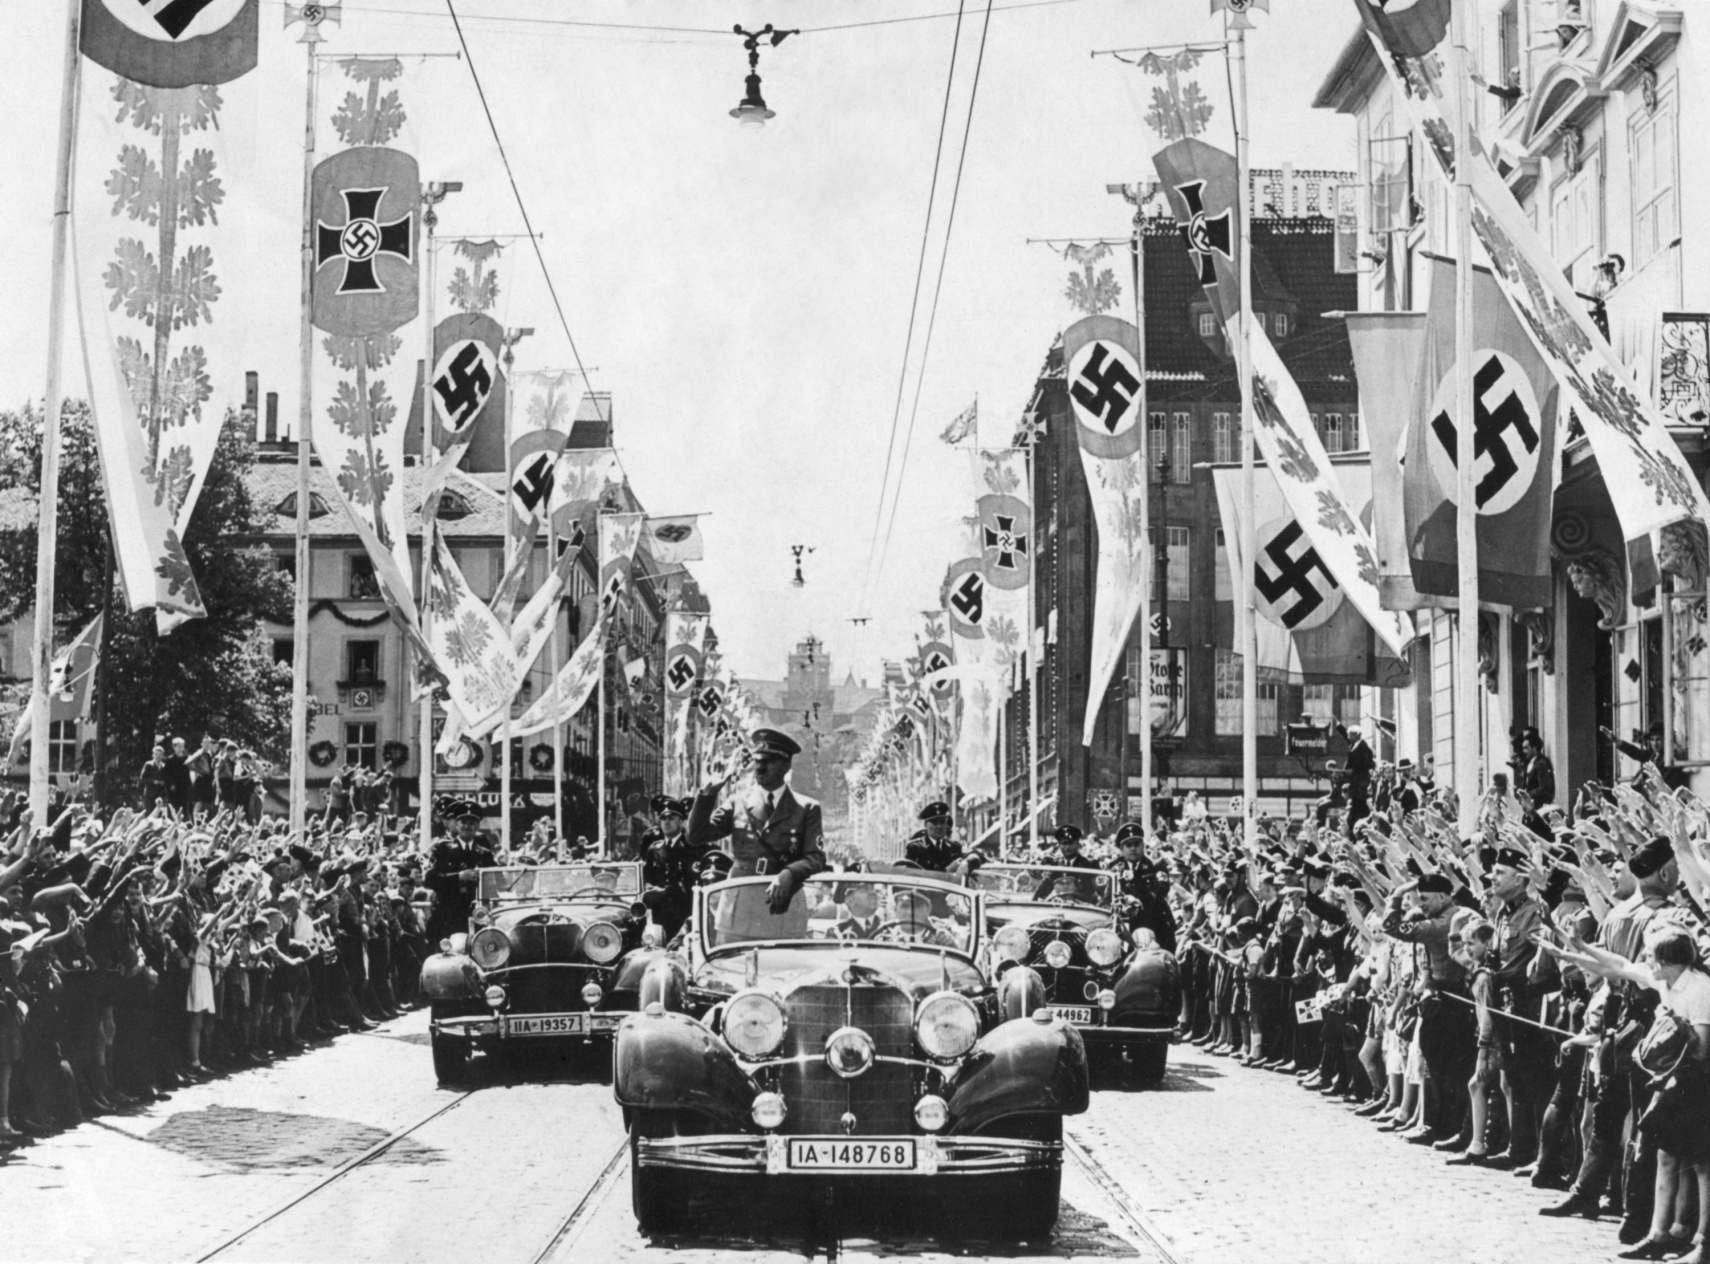 Adolf Hitler lehvitas oma autost paraadi eesotsas rahvahulkadele. Tänavad on kaunistatud erinevate haakristiga bänneritega. Ca. 1934-38. Hitleril oli mugav, kuid võlts põhjus, miks valis oma sümboolikaks haakristi sümboli. Seda kasutasid teisel aastatuhandel India aaria nomaadid. Natsiteoorias olid aarialased saksa päritolu ja Hitler järeldas, et haakrist oli igavesti antisemiitlik.